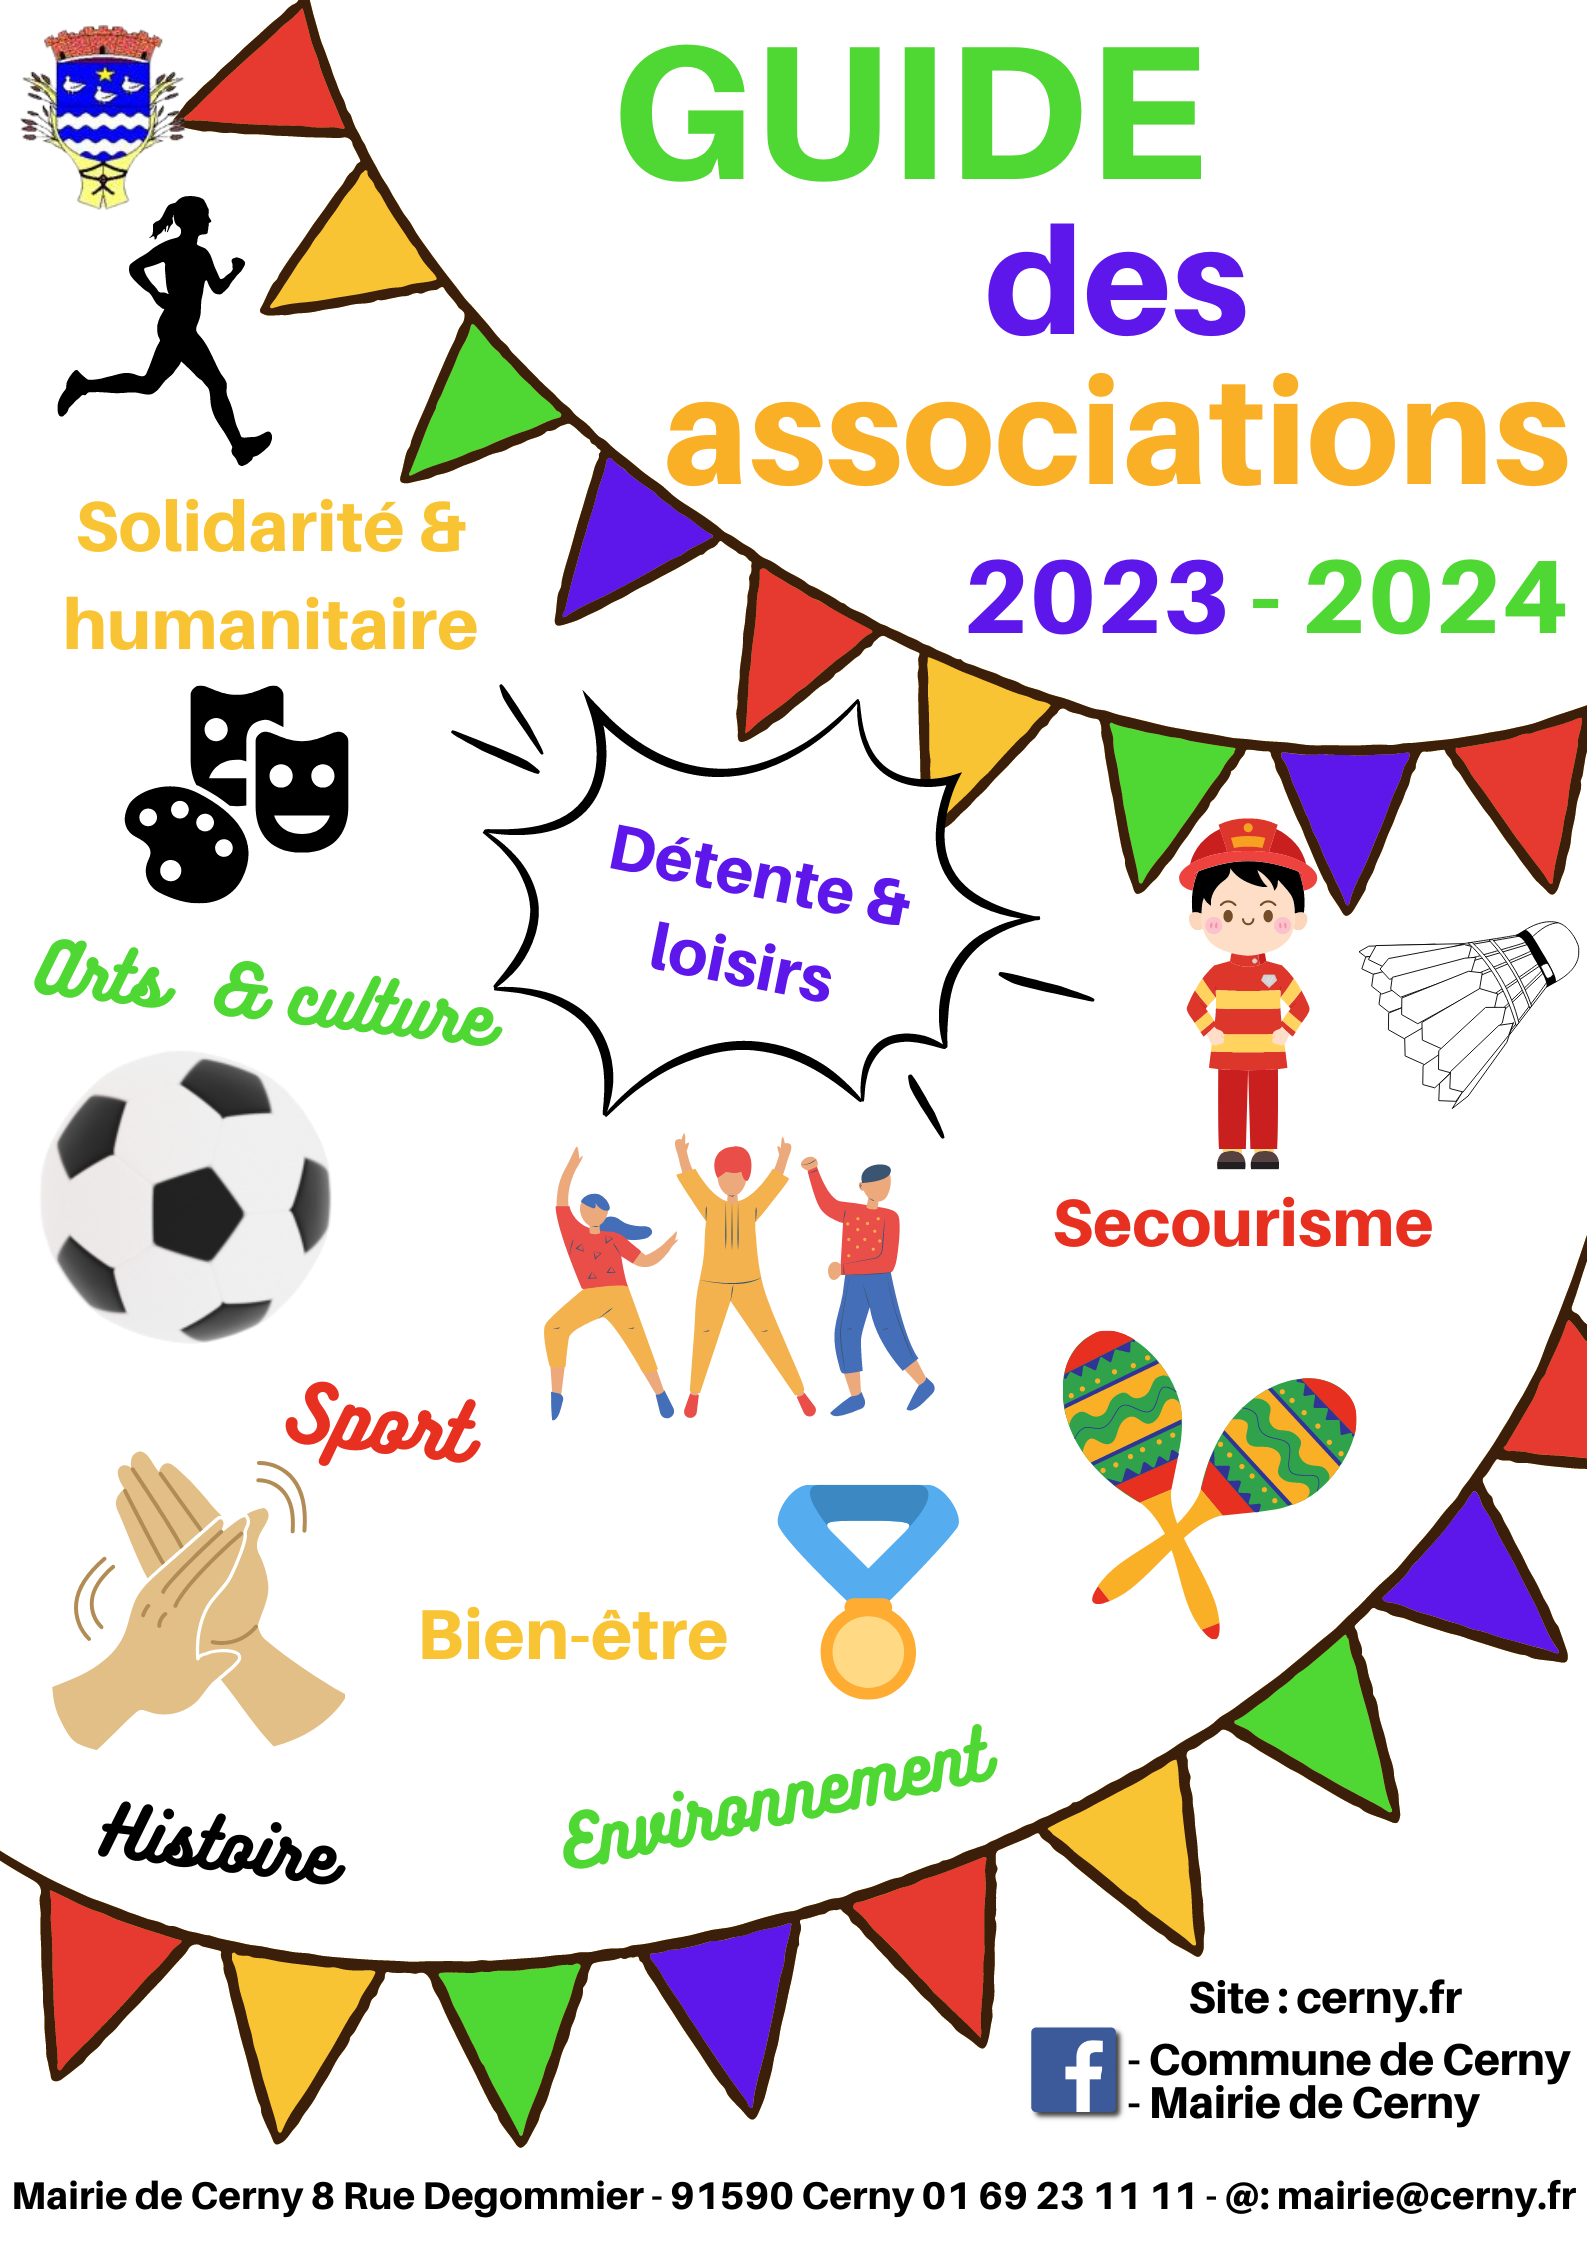 Guide des associations 2023 - 2024.png